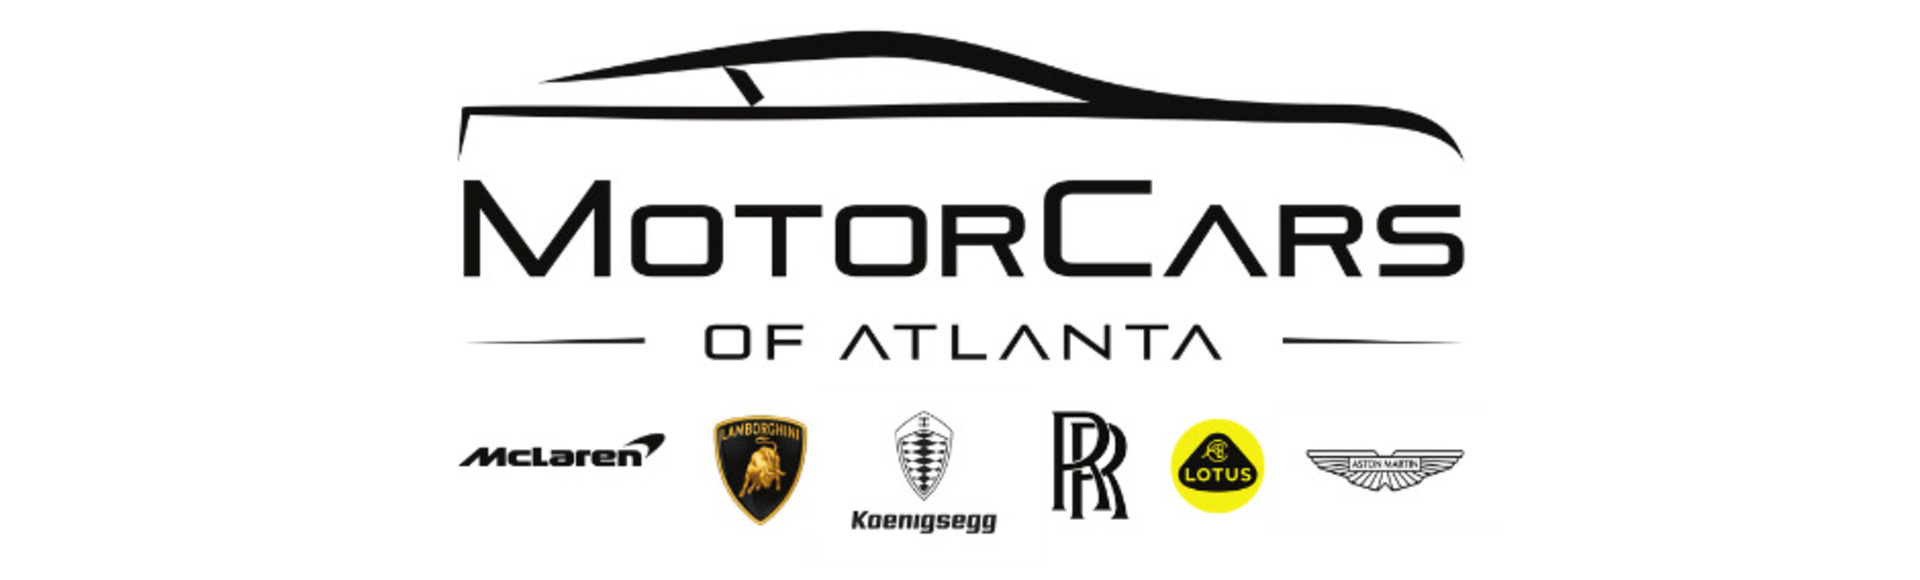 Motorcars of Atlanta